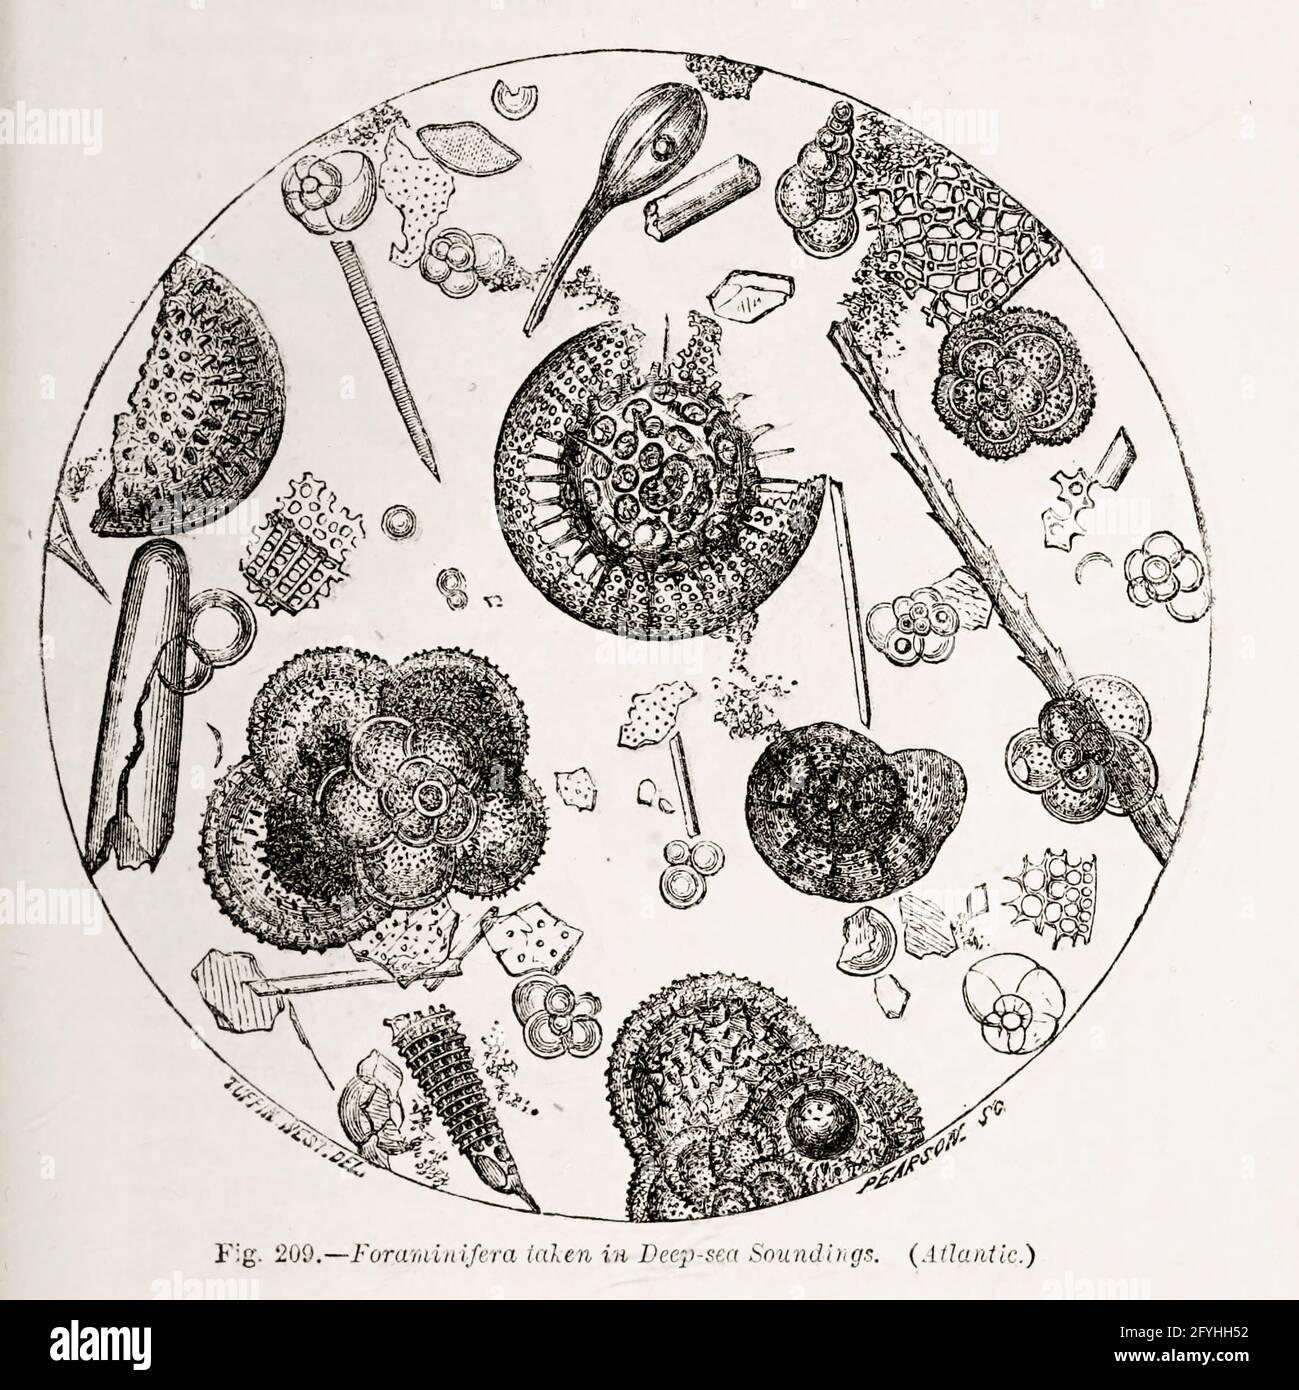 Zellen unter dem Mikroskop aus dem Buch "das Mikroskop: Seine Geschichte, Konstruktion und Anwendung" von Hogg, Jabez, 1817-1899 Veröffentlicht in London von G. Routledge im Jahr 1869 mit Illustrationen von TUFFEN WEST Stockfoto